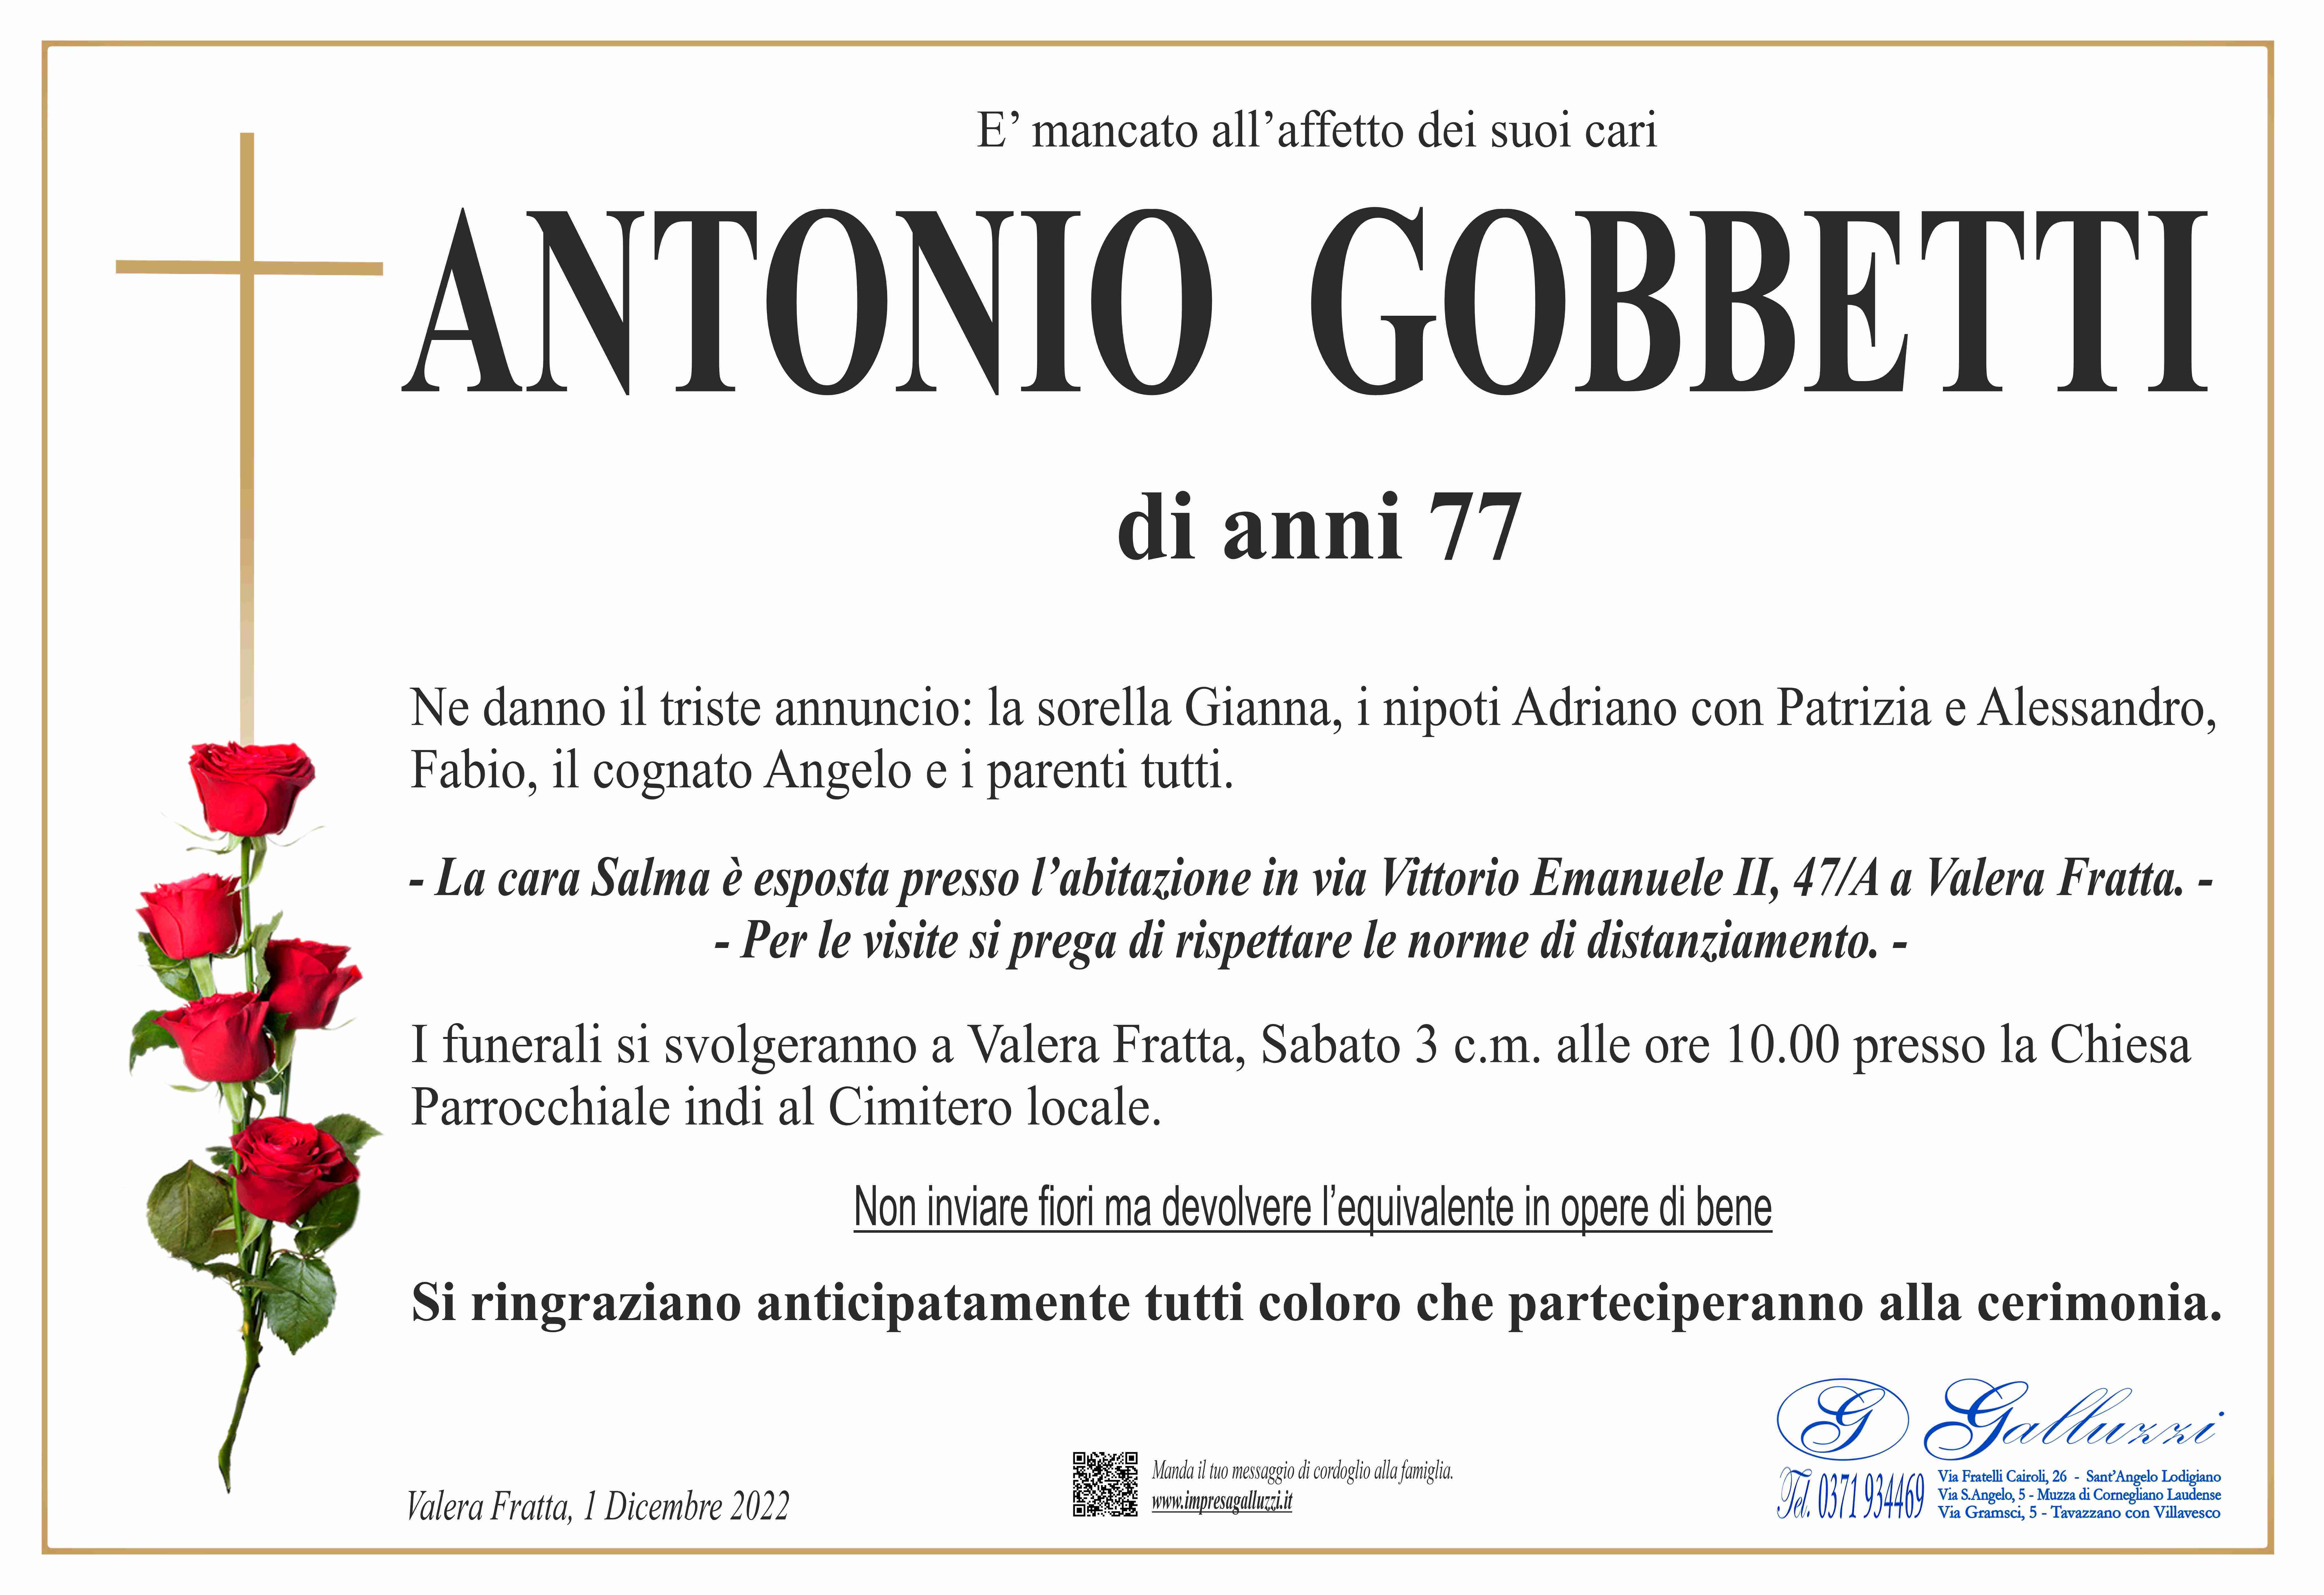 Antonio Gobbetti